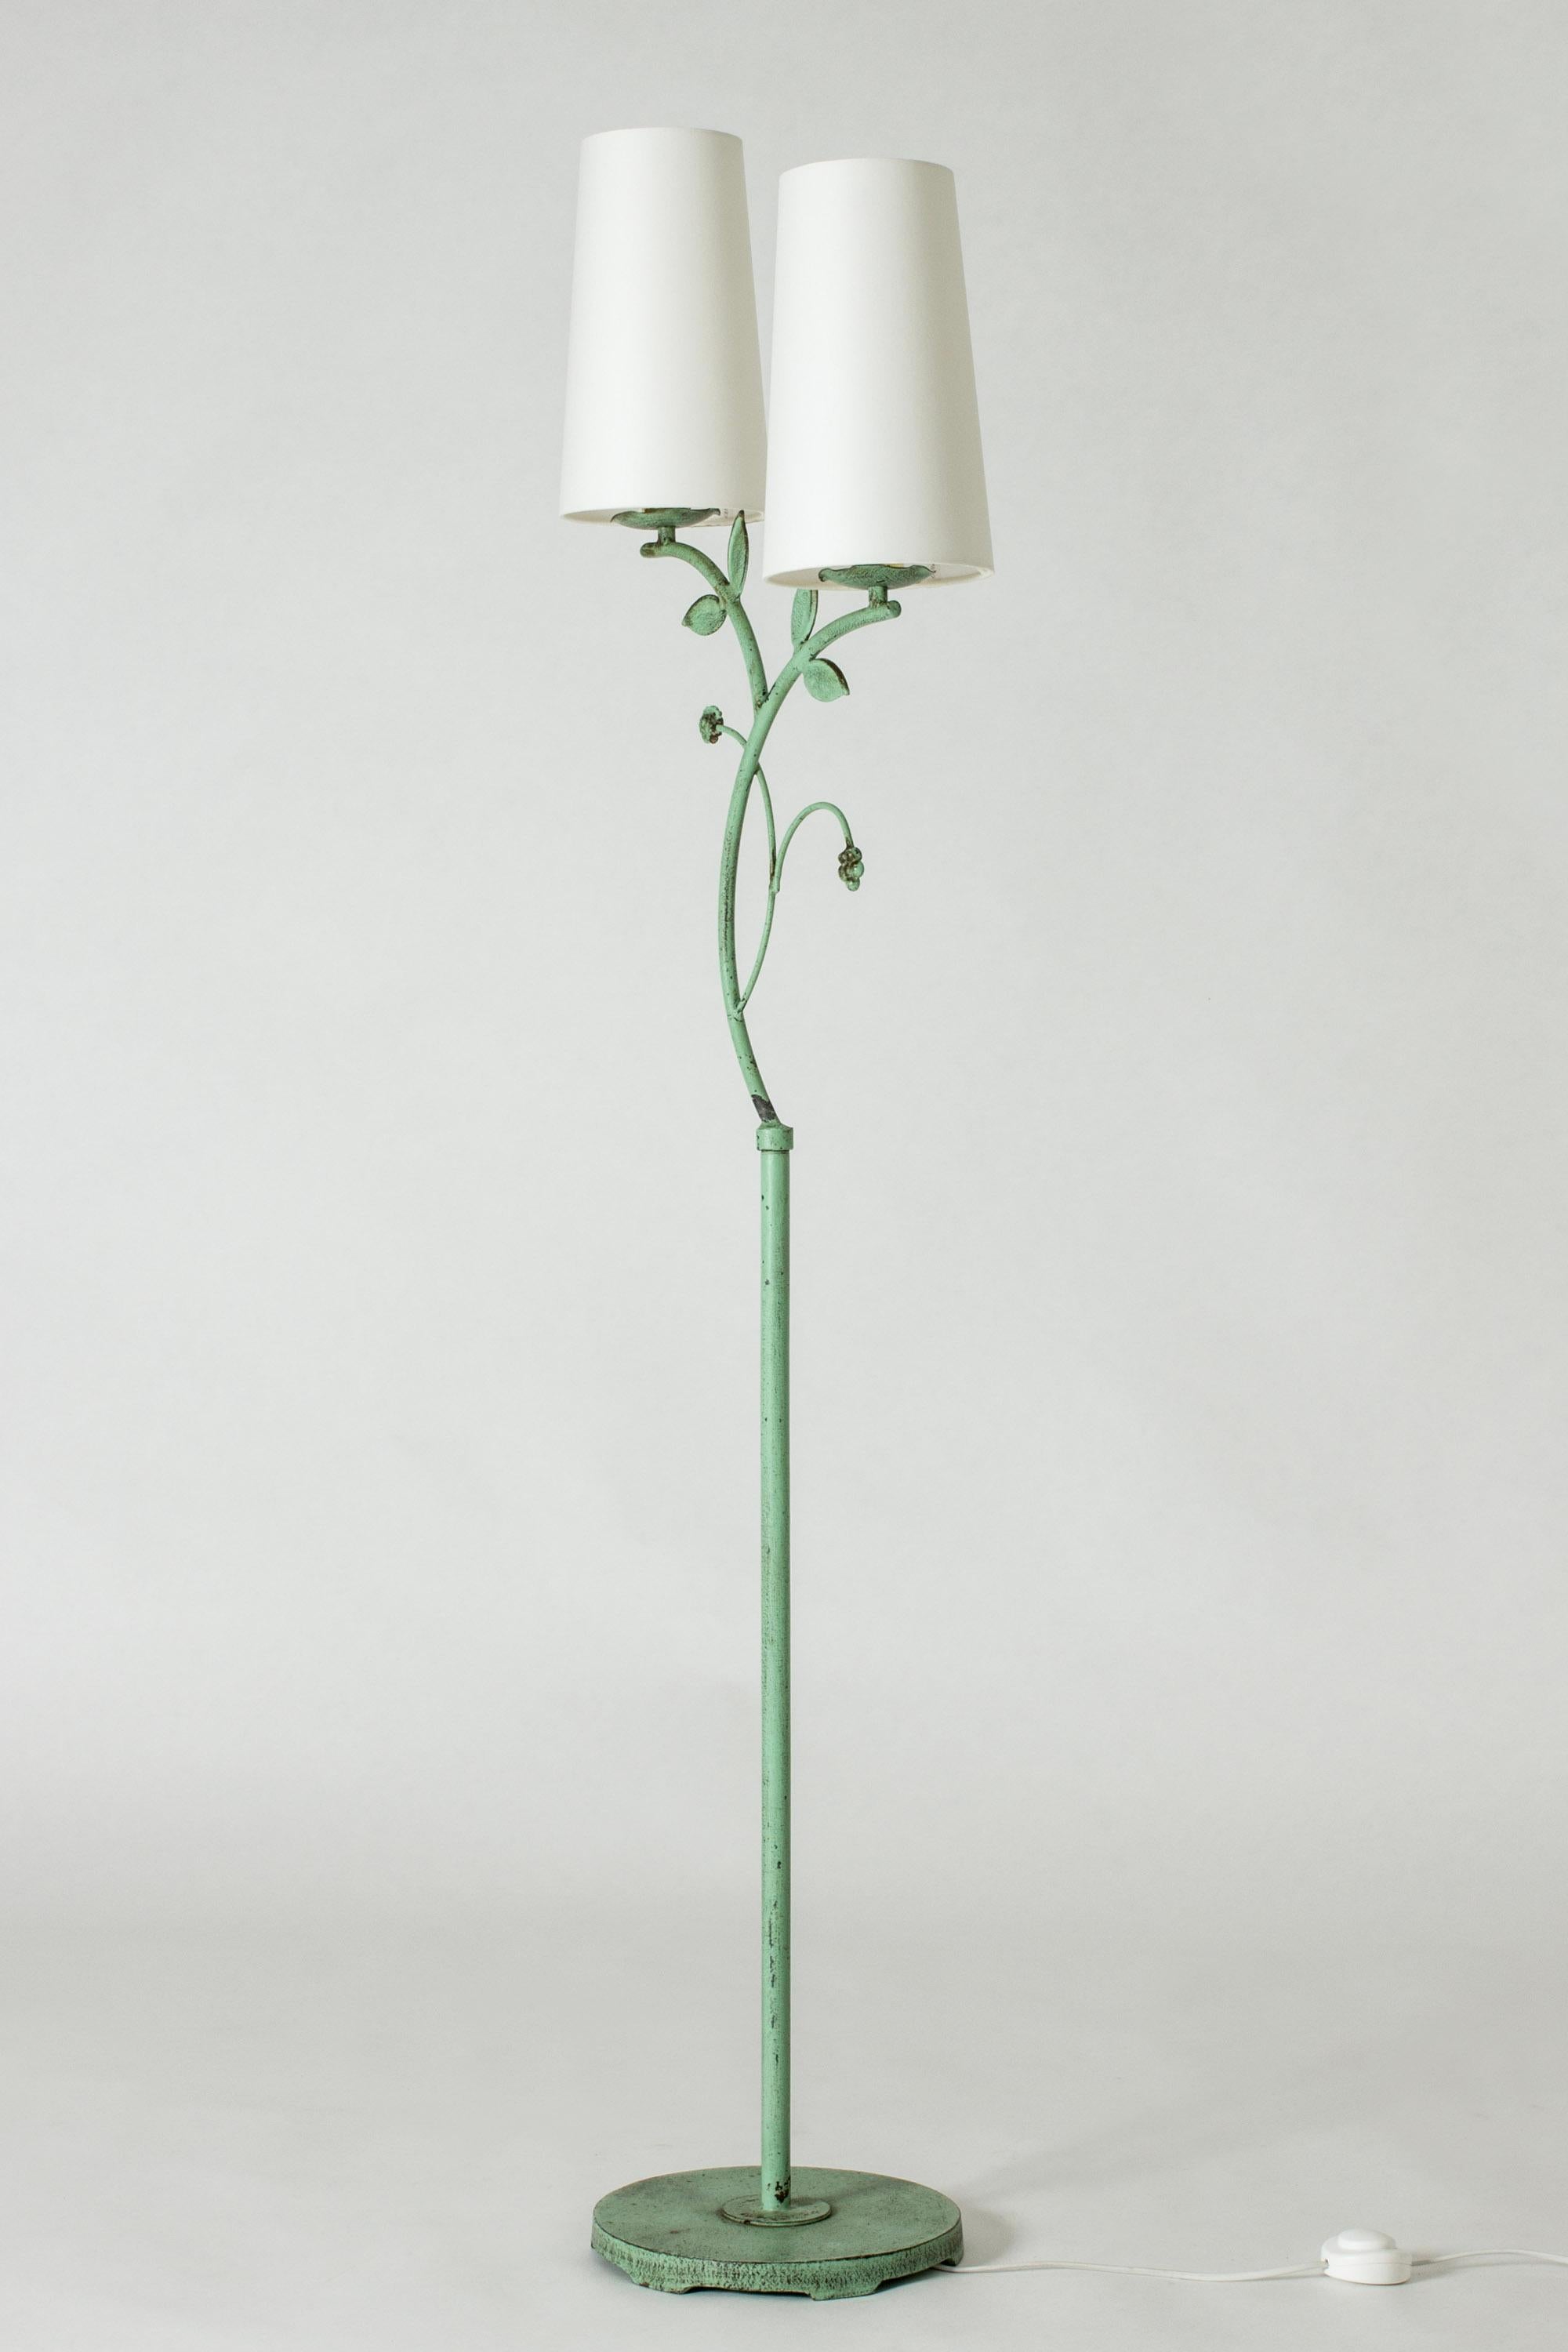 Magnifique lampadaire suédois Grace de Bjerkås Armatur, en métal laqué vert oxydé. Décoré de feuilles et de fleurs.